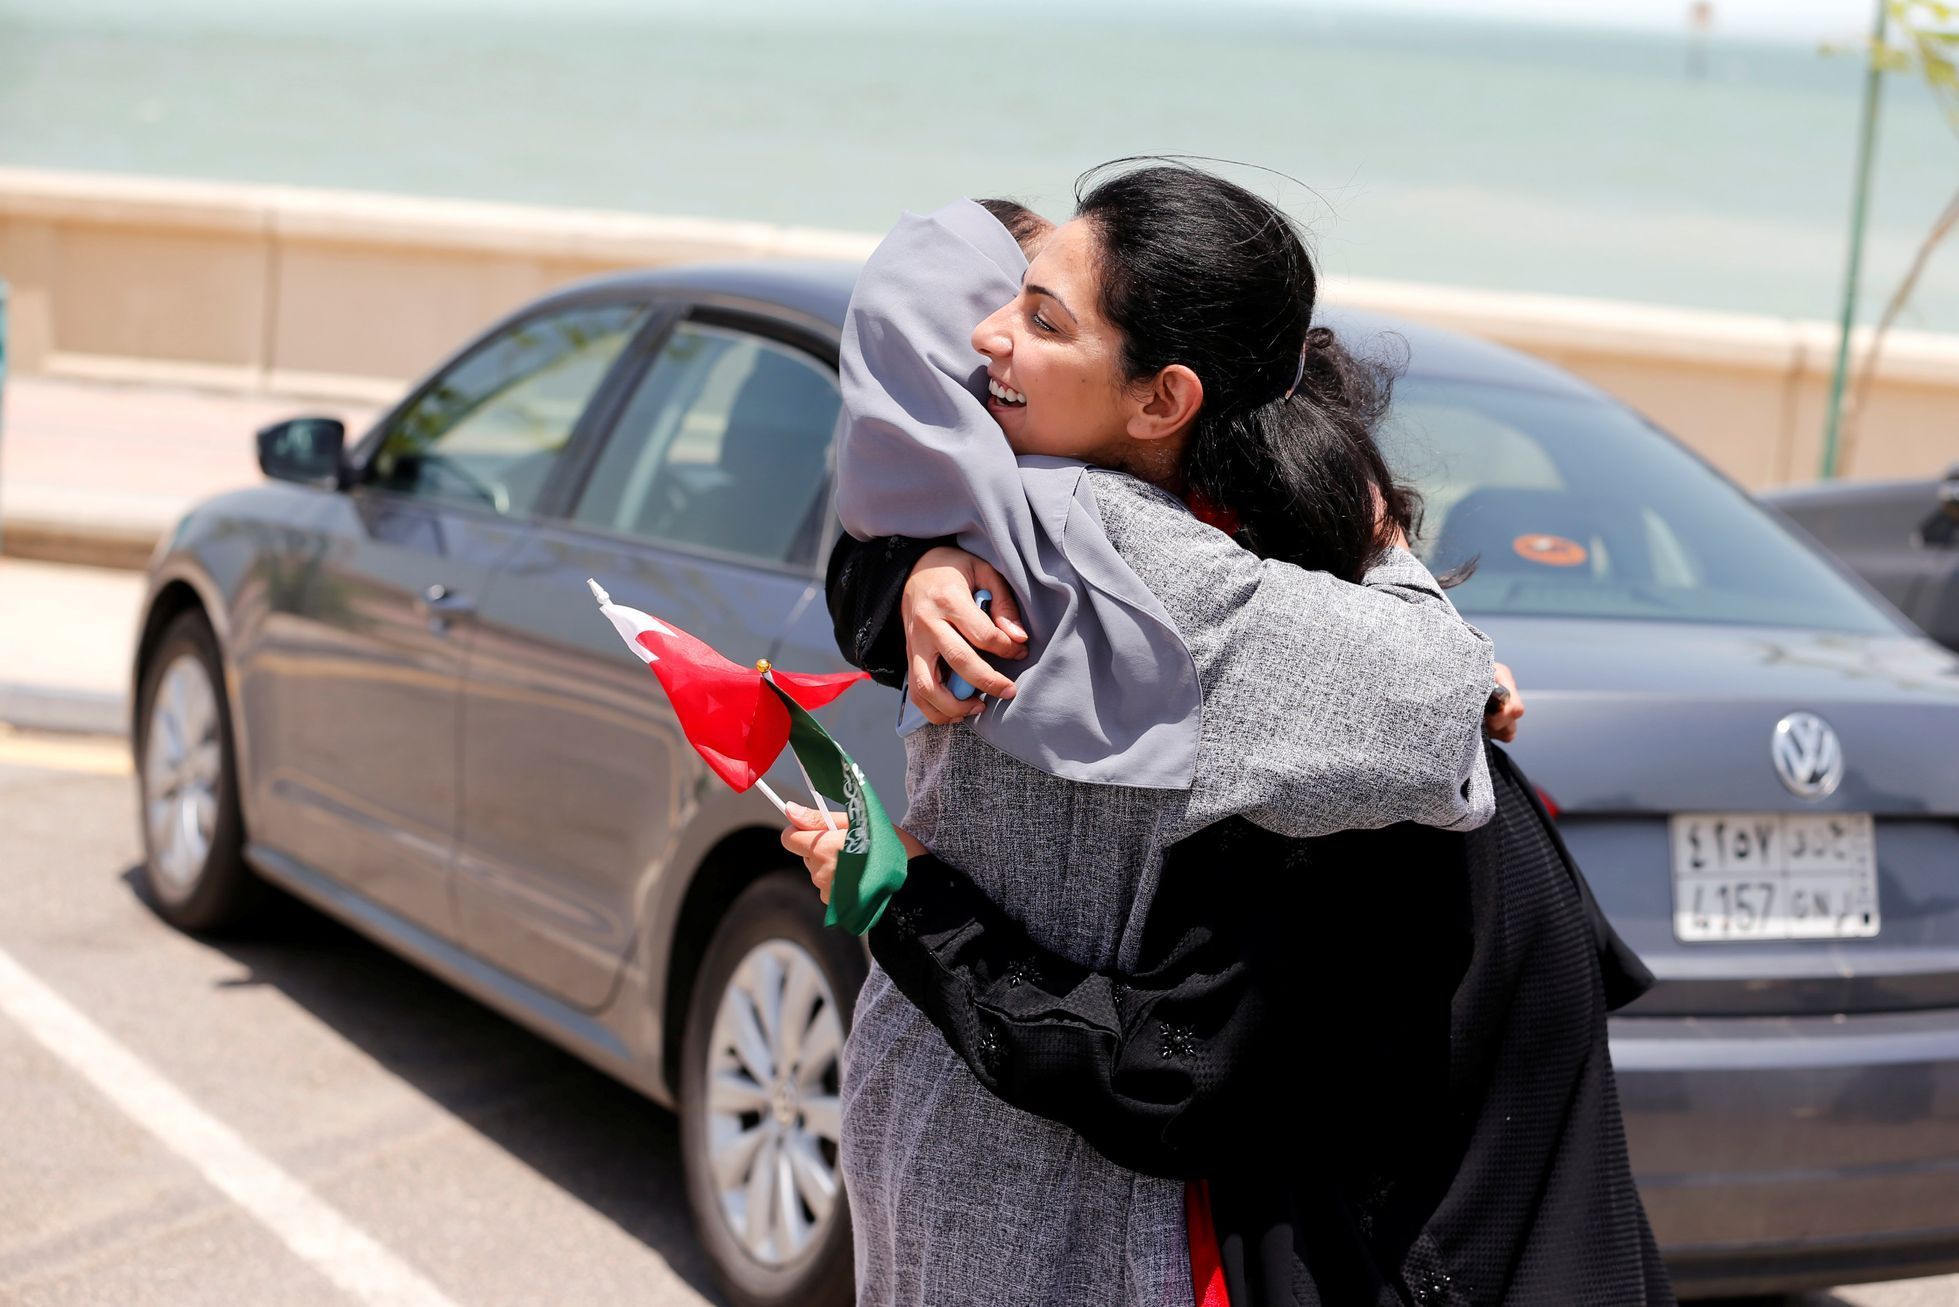 Ženy v Saúdské Arábii mohou řídit